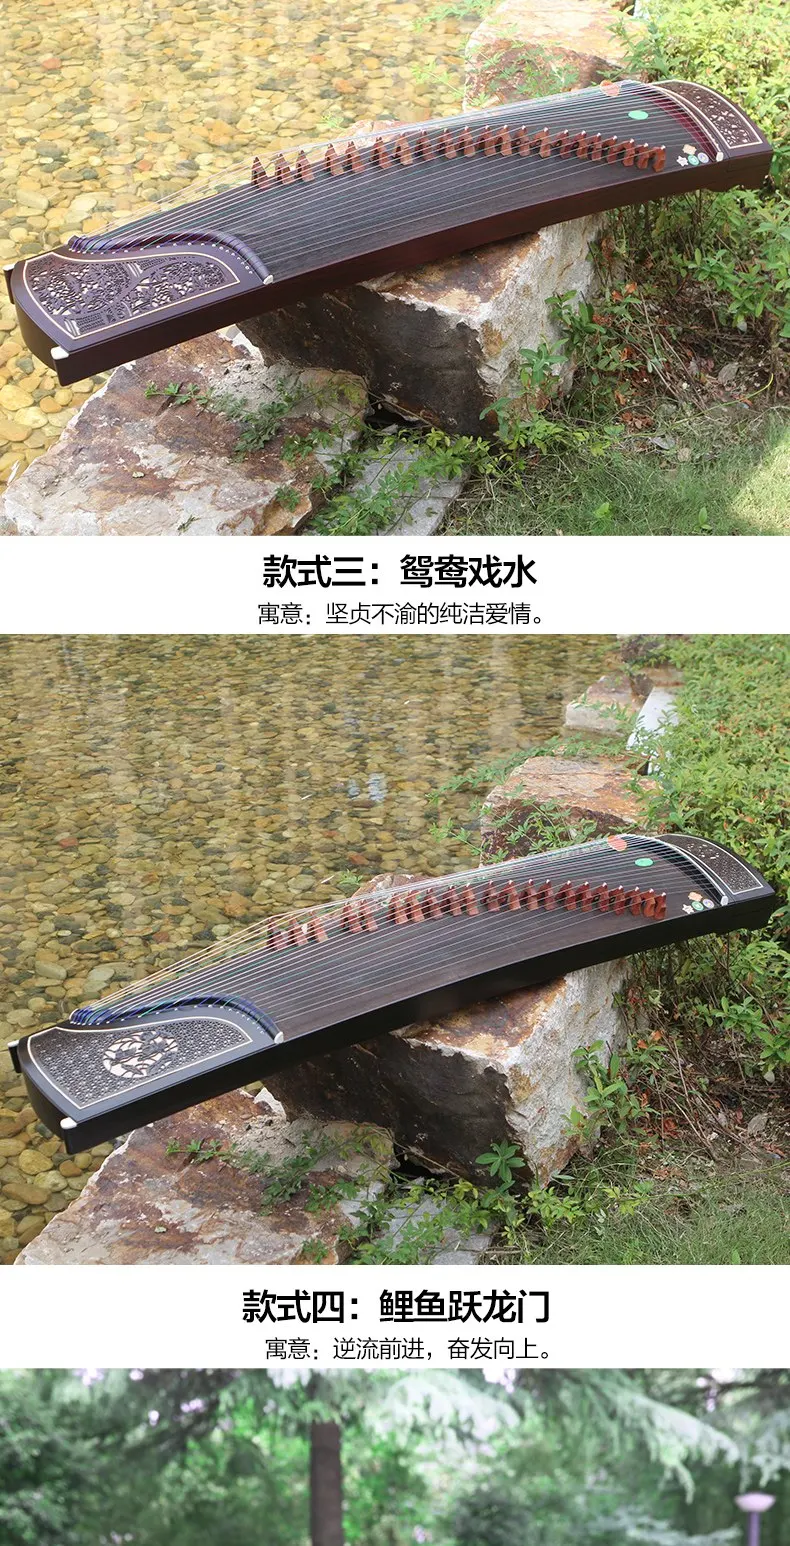 Профессиональный 21 струнный китайский zither высокое качество wutong деревянный гучжэн Китайский традиционный музыкальный инструмент Гу Чжэн зитер